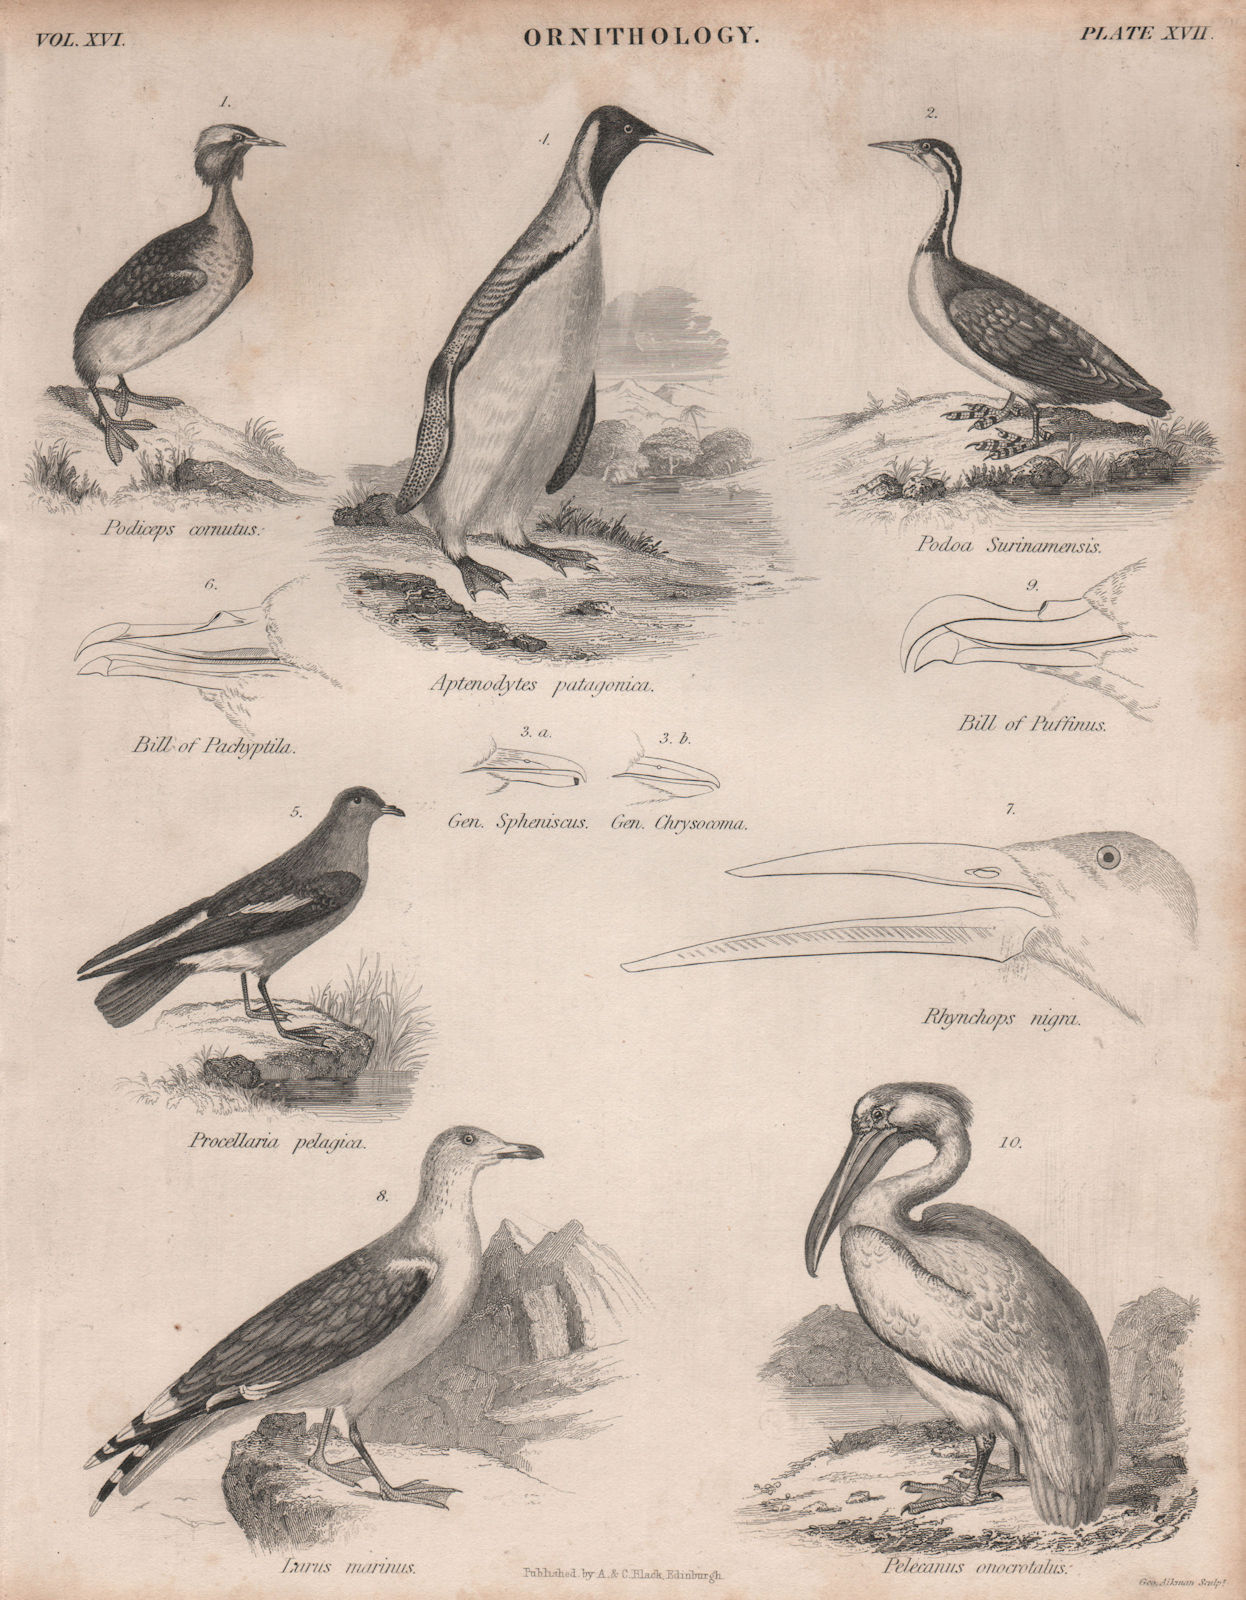 Horned Grebe. Darter. King penguin. Storm Petrel. Black-backed gull.Pelican 1860